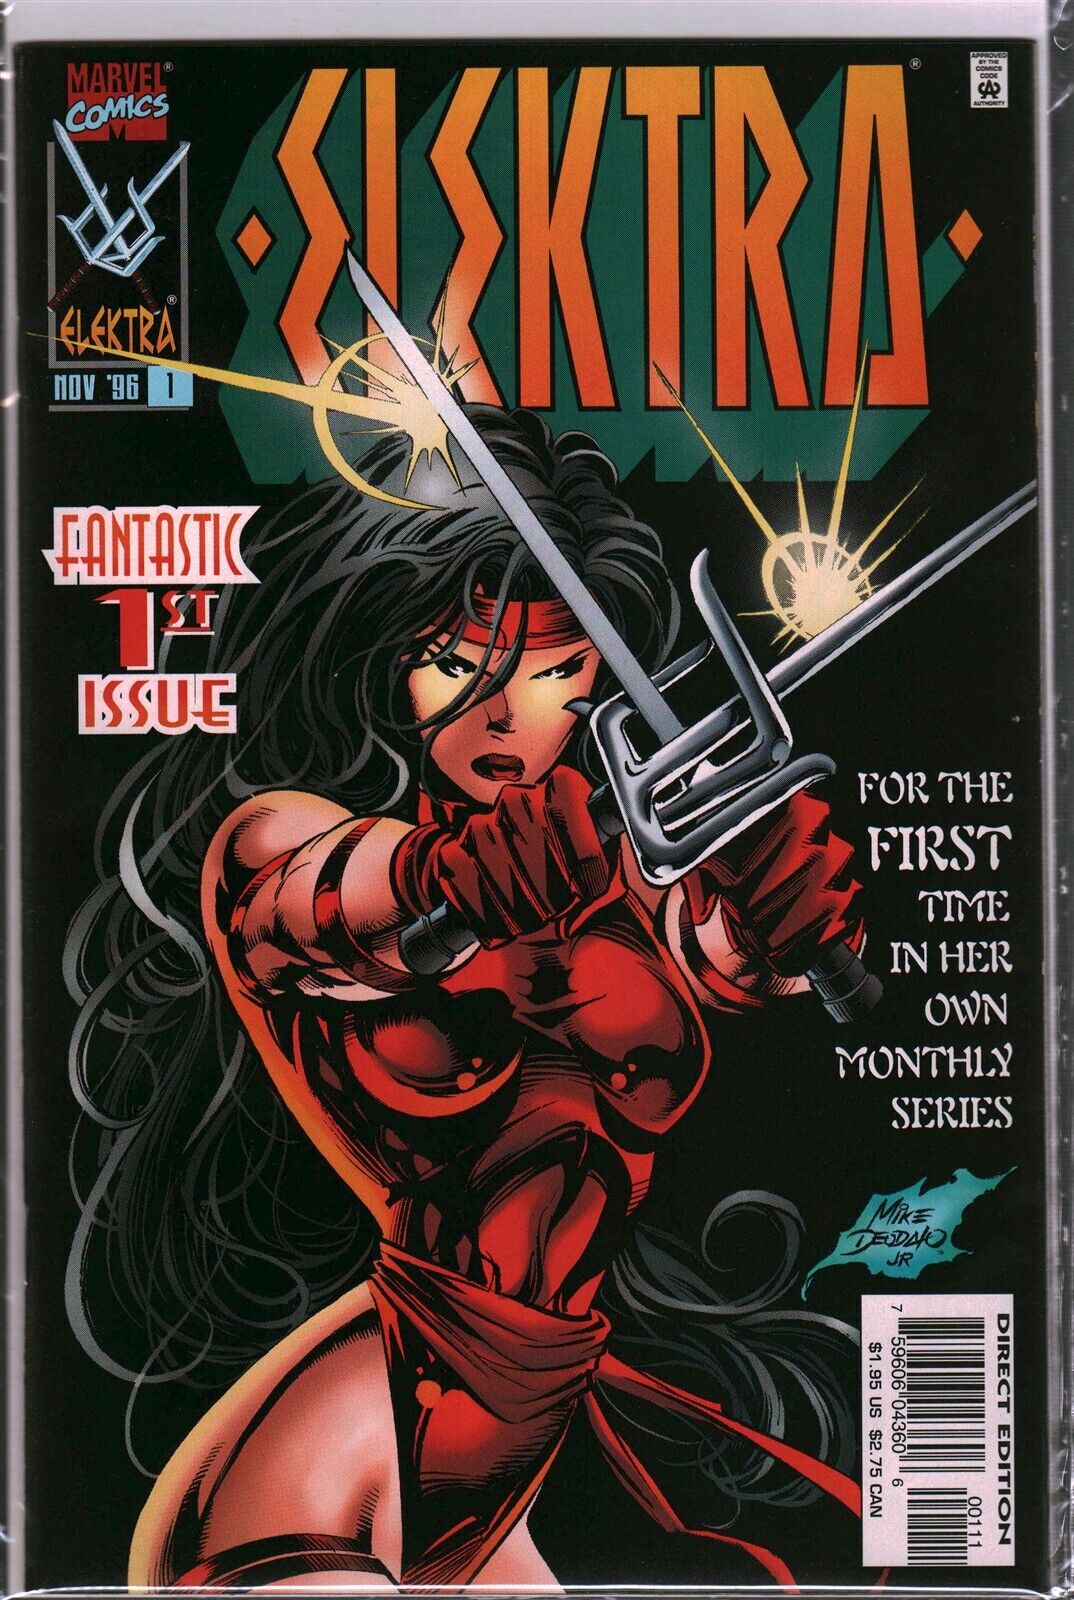 VTG Marvel Comics Elektra Fantastic 1st Issue #1 Comic Book 1996